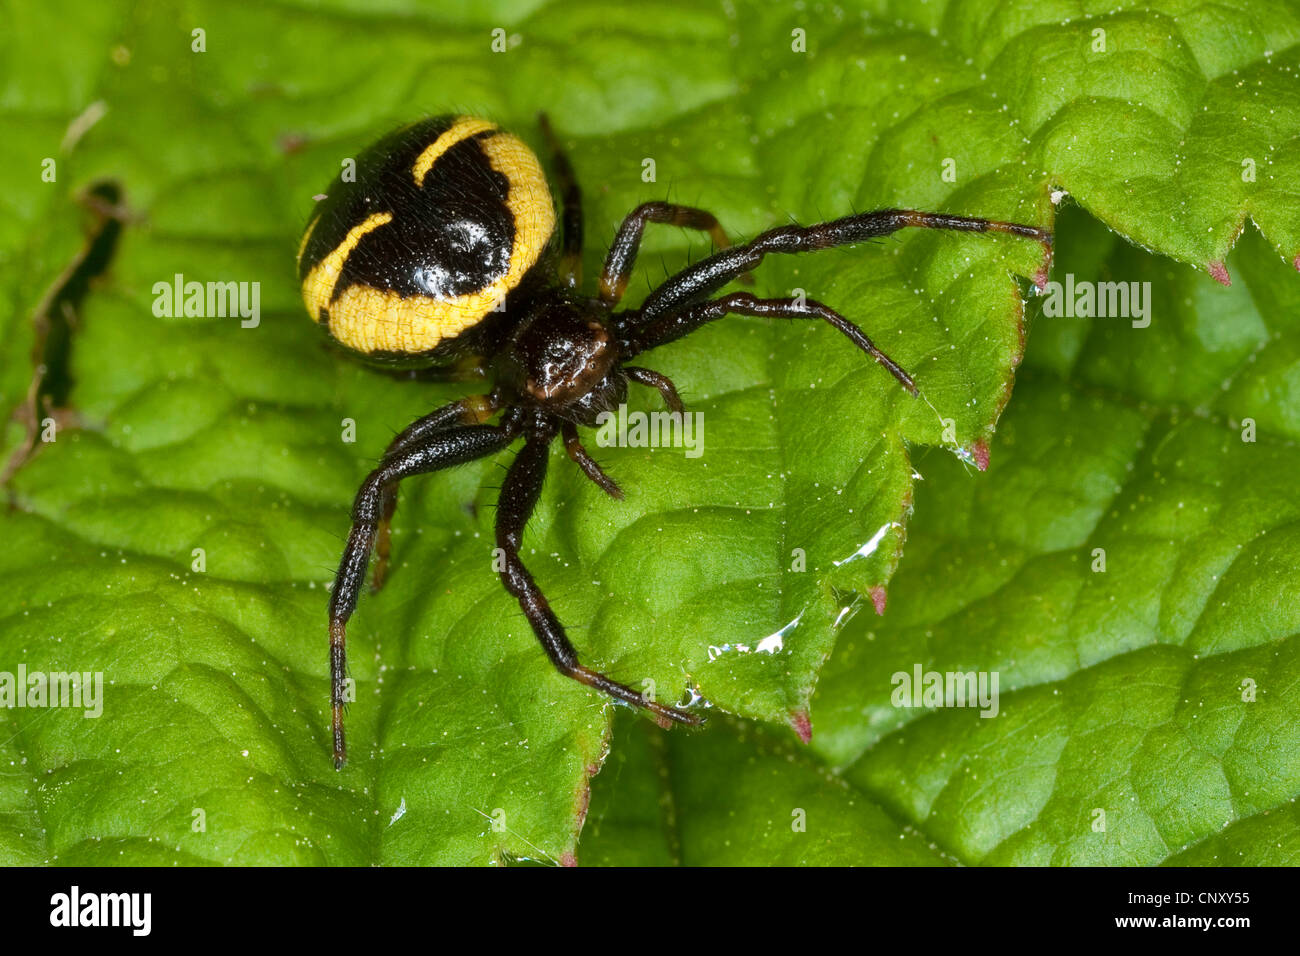 Red Crab Spider (Synema globosum, Synaema globosum), sitting on a leaf, Germany Stock Photo